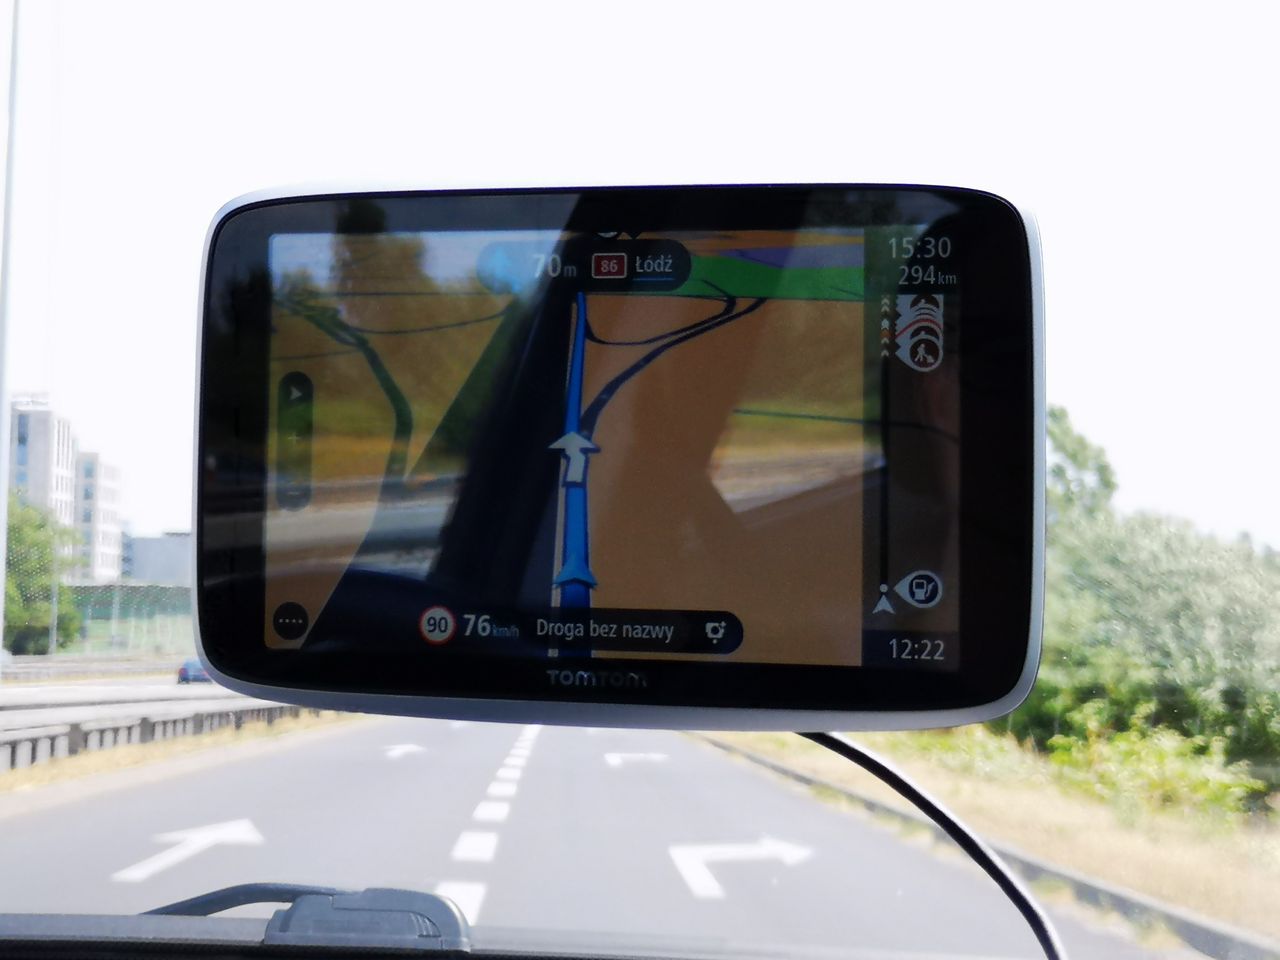 Błyszczący ekran sprawia, że łatwo o odblaski, ale tylko z punktu widzenia pasażera. Kierowca w znakomitej większości sytuacji widzi mapę bez problemu.